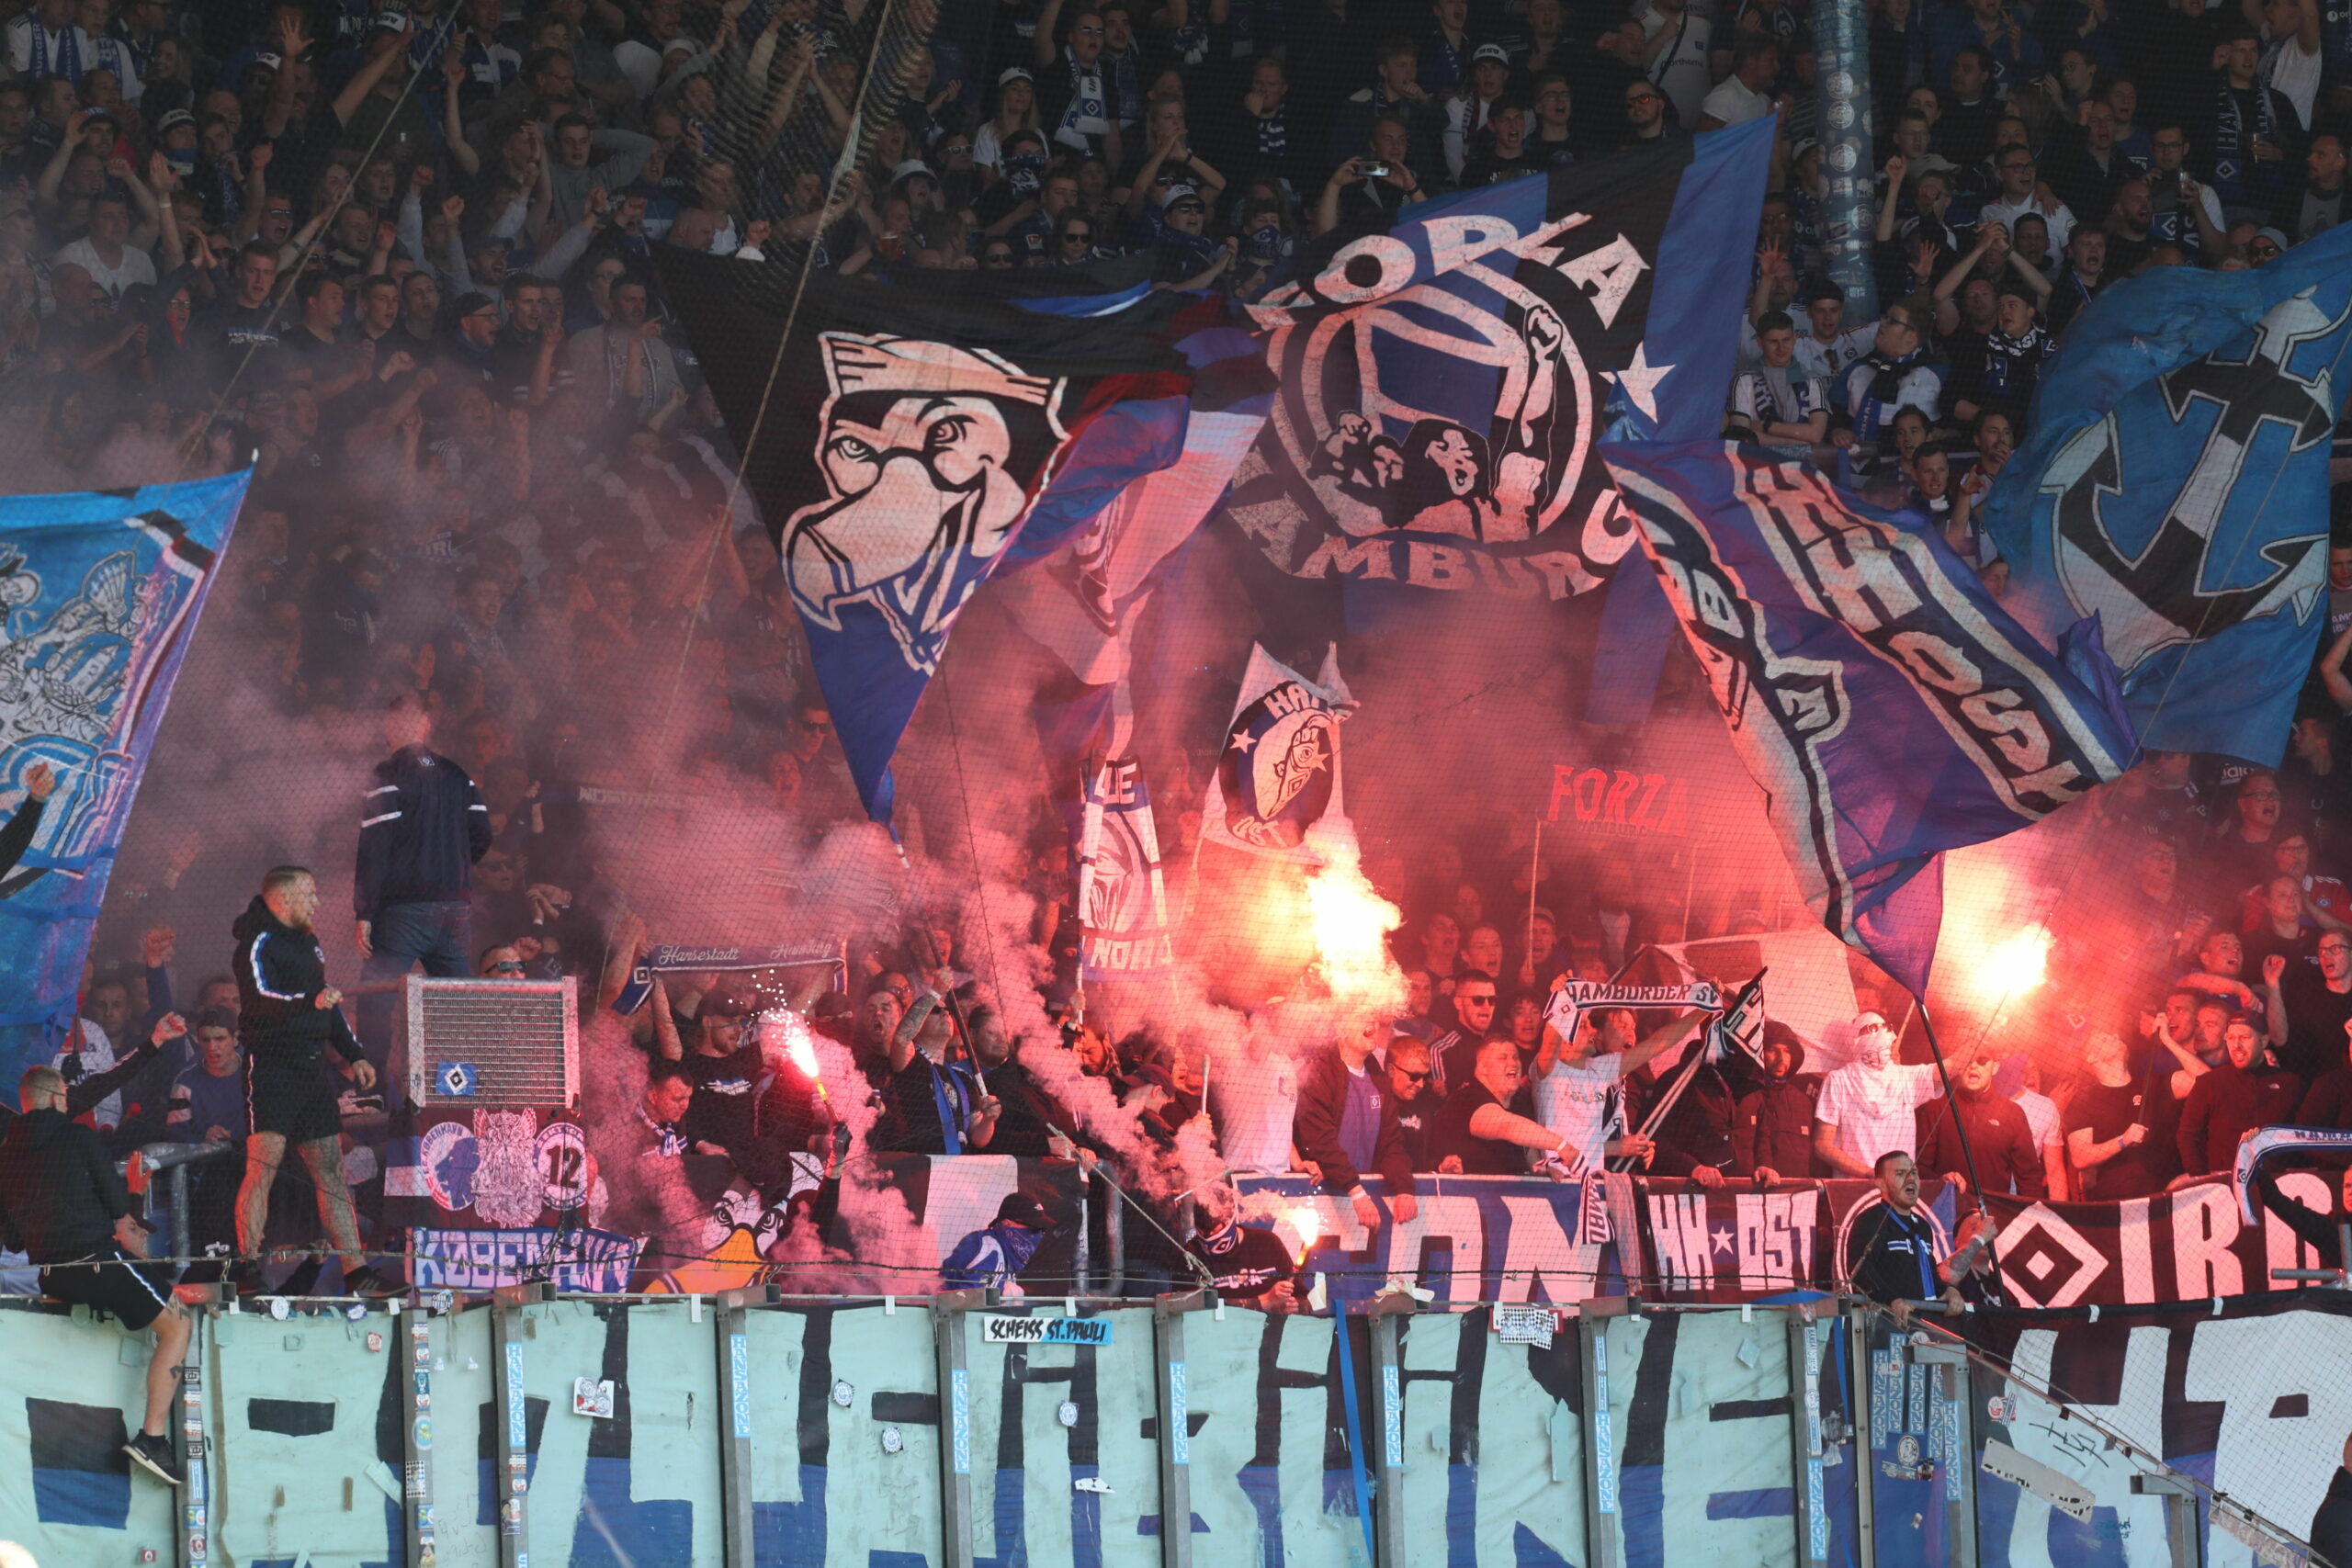 Anhänger vom Hamburger SV zünden Pyrotechnik. Die Polizei ermittelt wegen Ausschreitungen im Stadion.